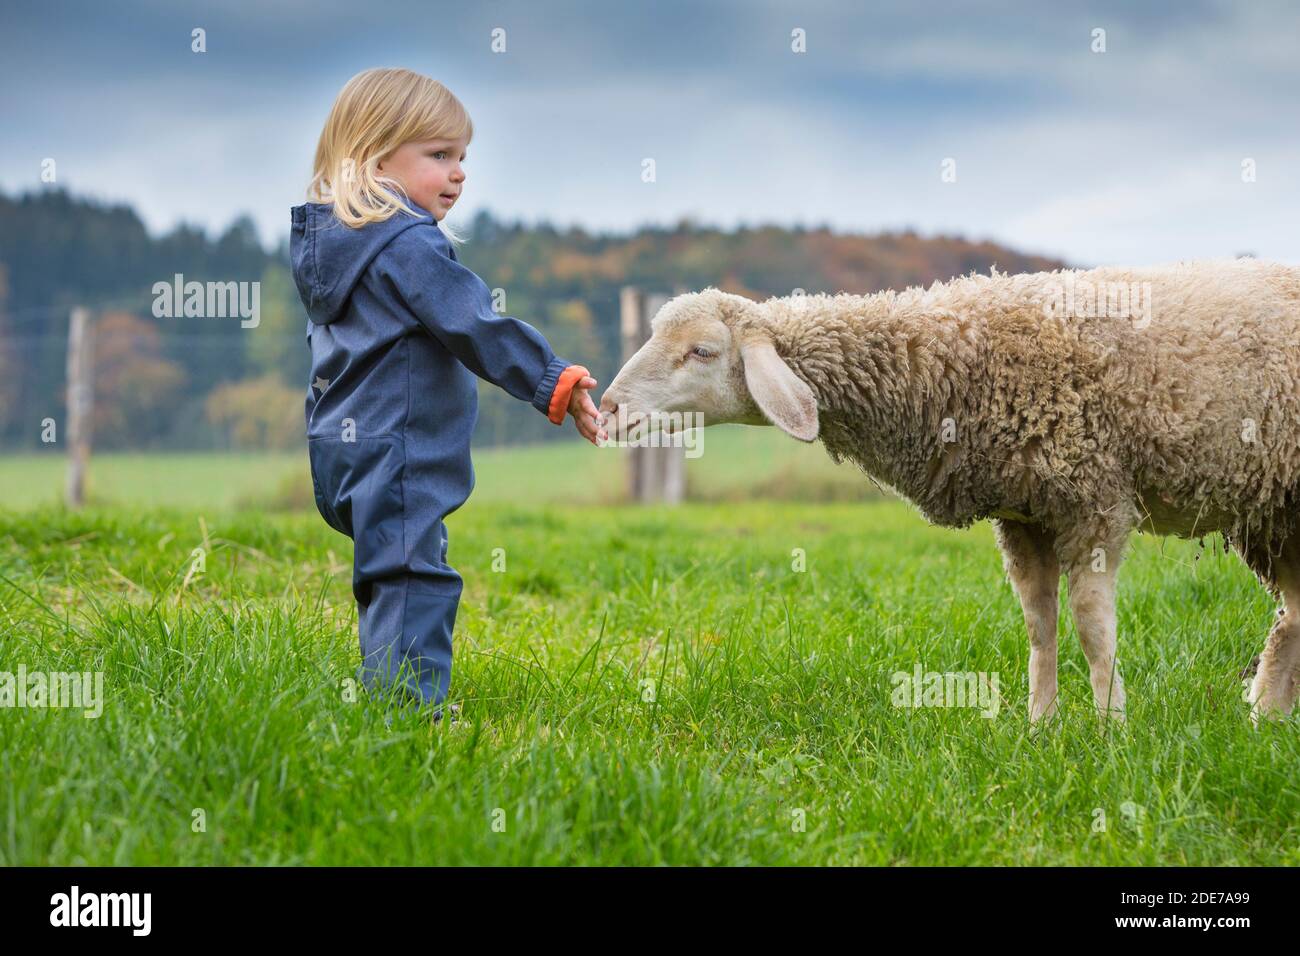 Deutschland, Bayern, Allgäu, Mindelheim, kleines Mädchen auf der Weide mit Schaf Foto Stock